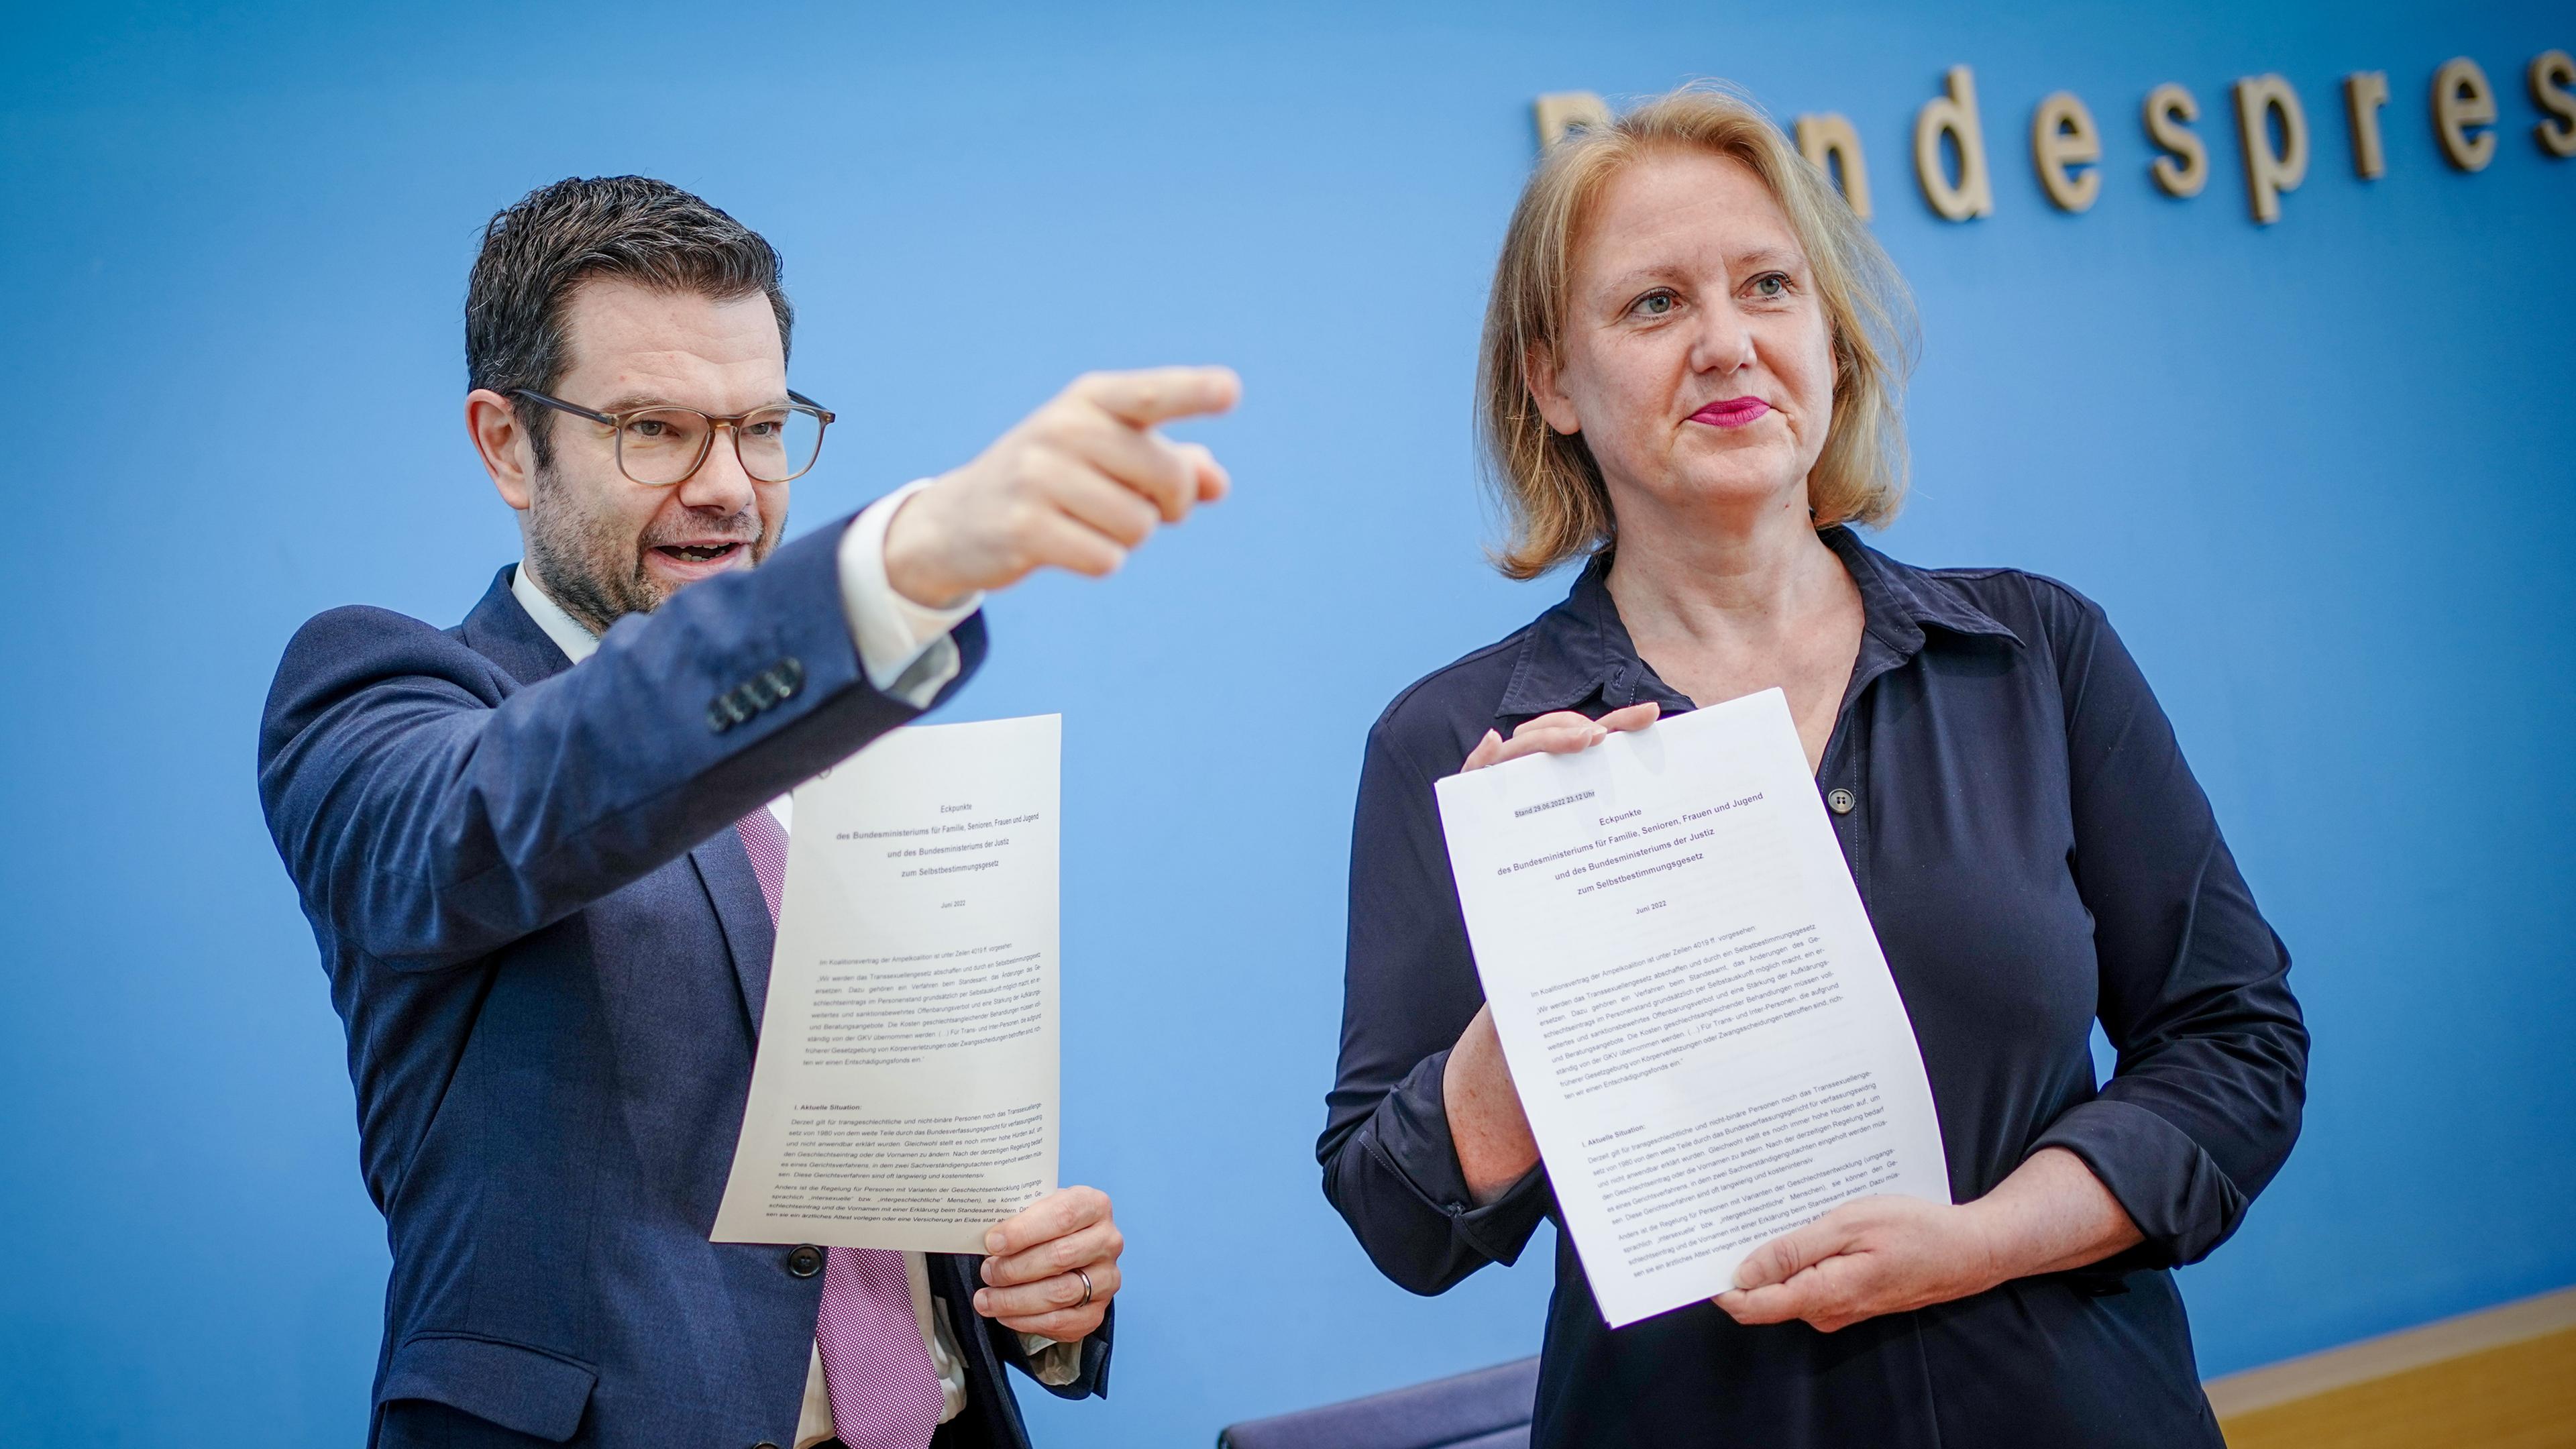  Lisa Paus (Bündnis 90/Die Grünen), Bundesfamilienministerin, und Marco Buschmann (FDP), Bundesminister der Justiz, stellen in der Bundespressekonferenz das Eckpunktepapier zum Selbstbestimmungsgesetz vor.